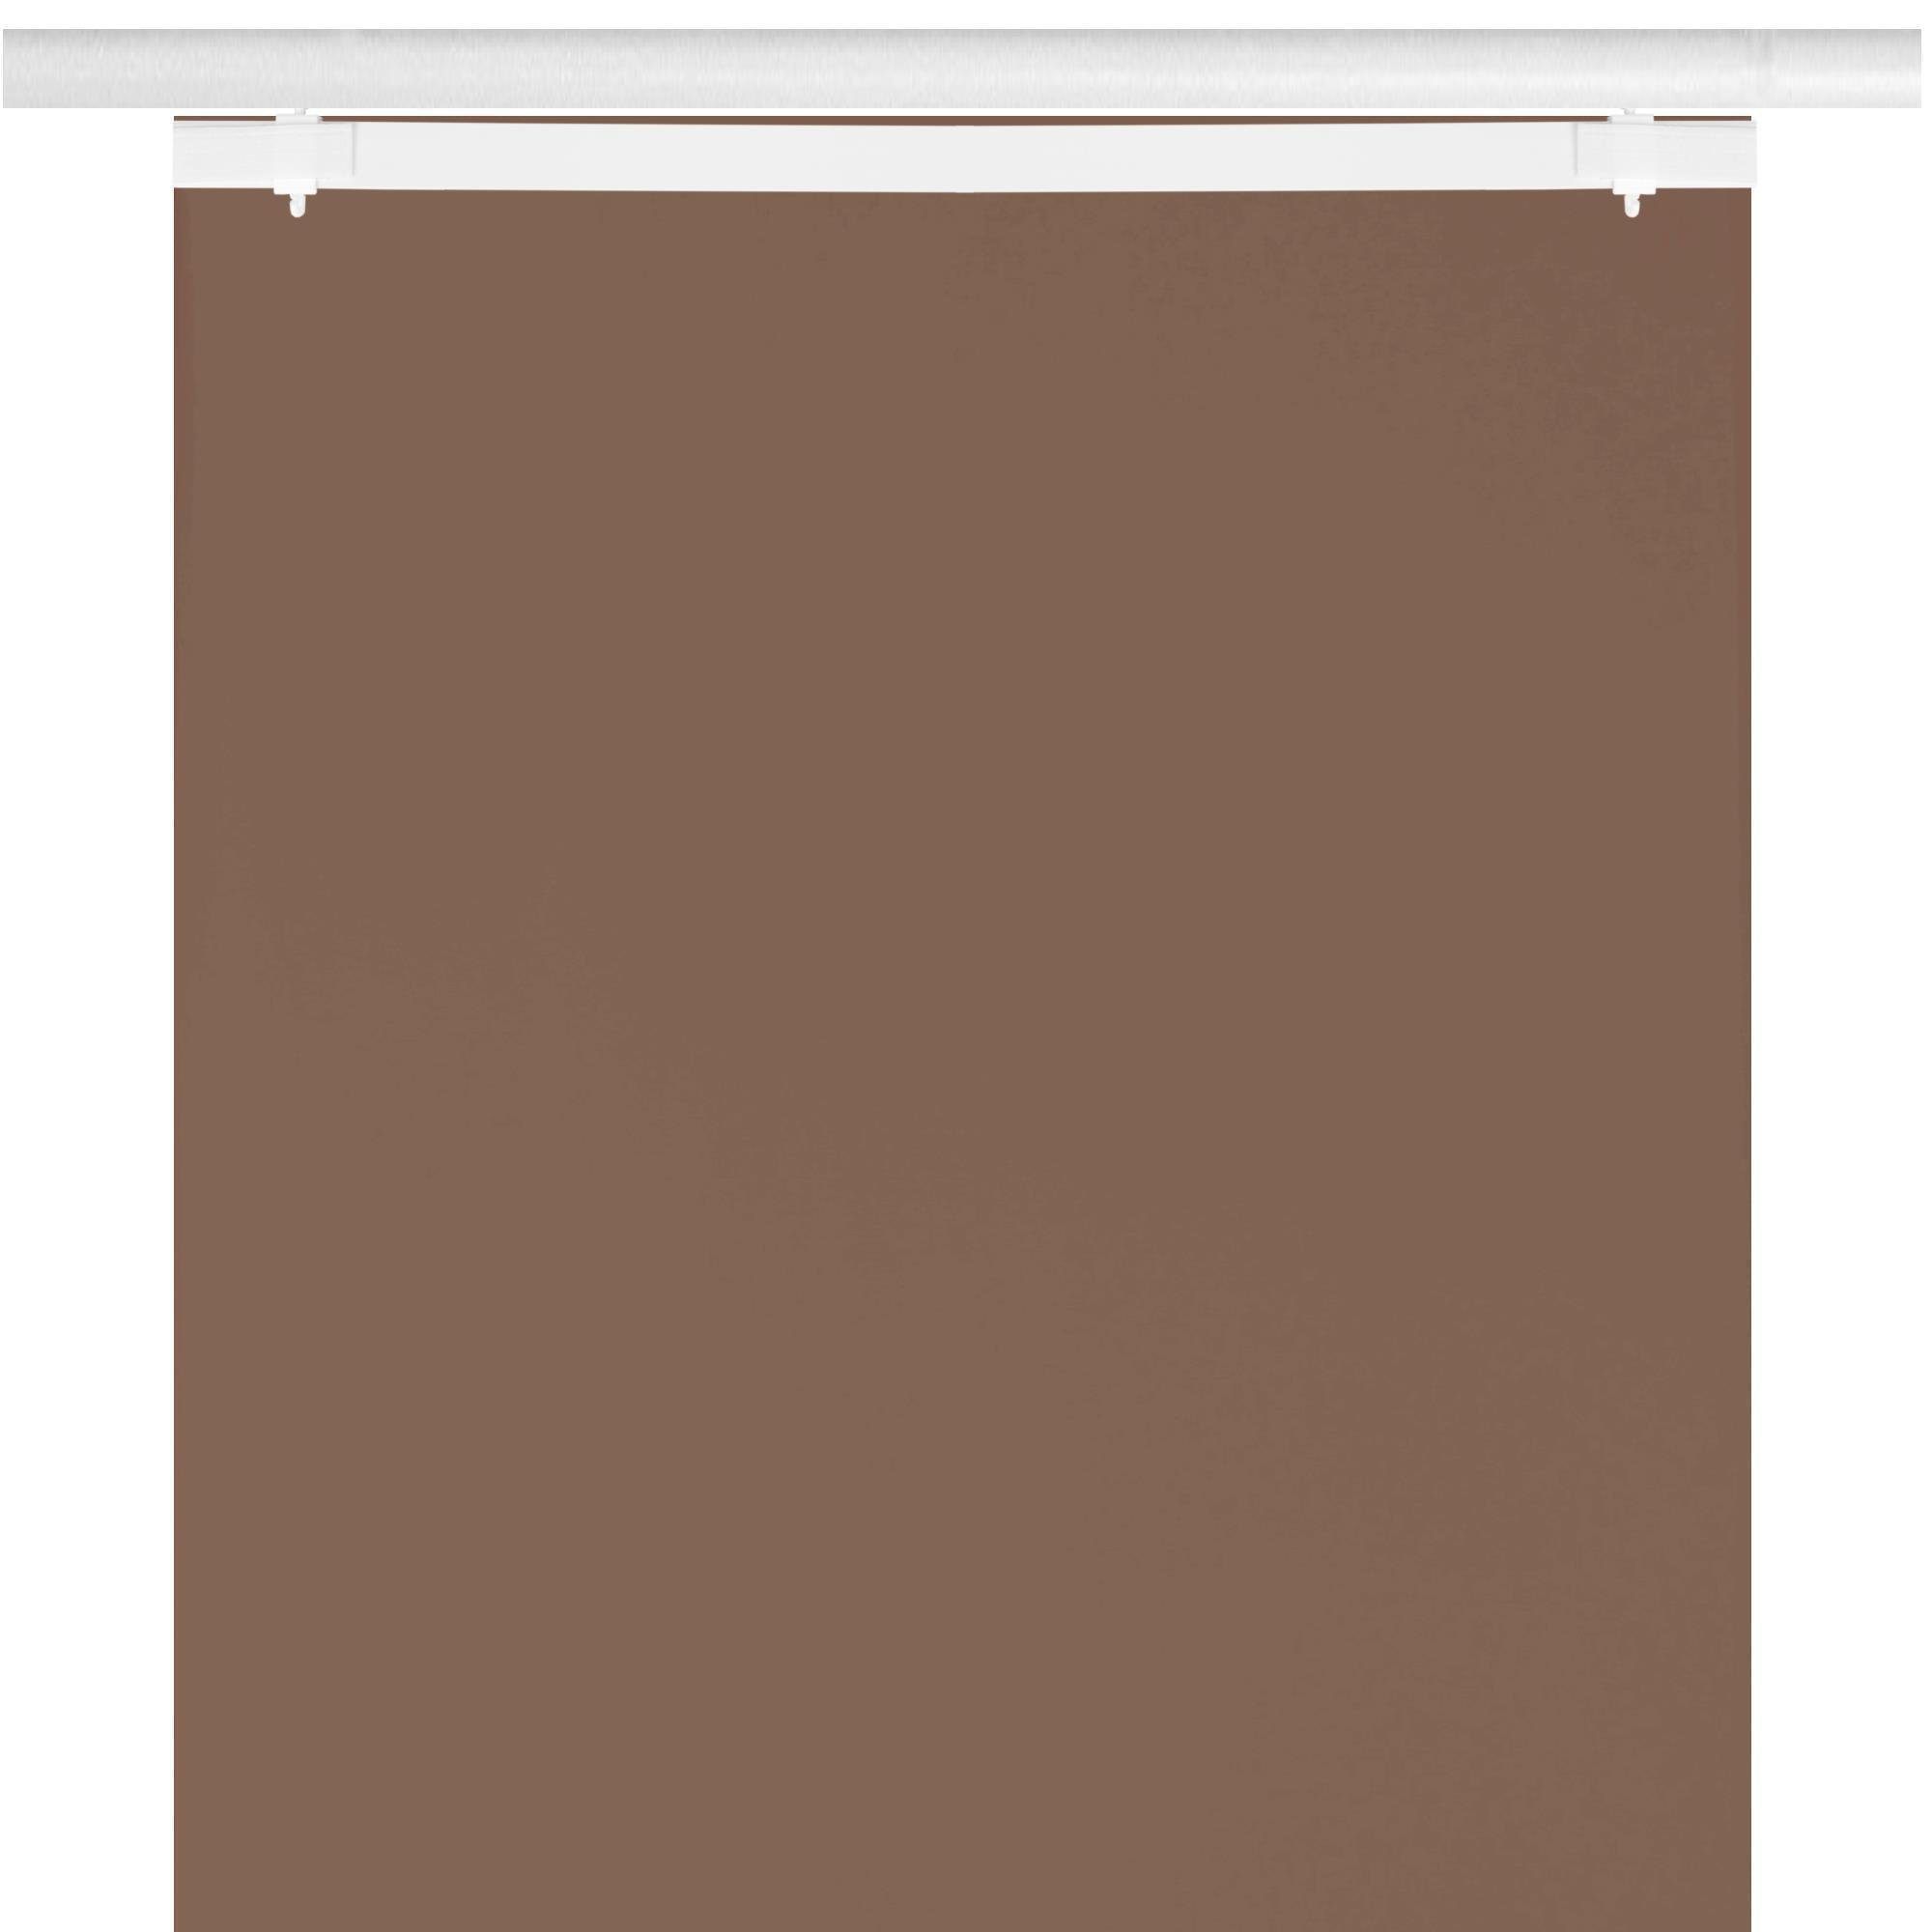 Dunkelbraun 260cm (BxL), Klettband 60cm (3 x Bestlivings, transparent, Klettband Vorhang, St), Transparente mit Schiebegardine